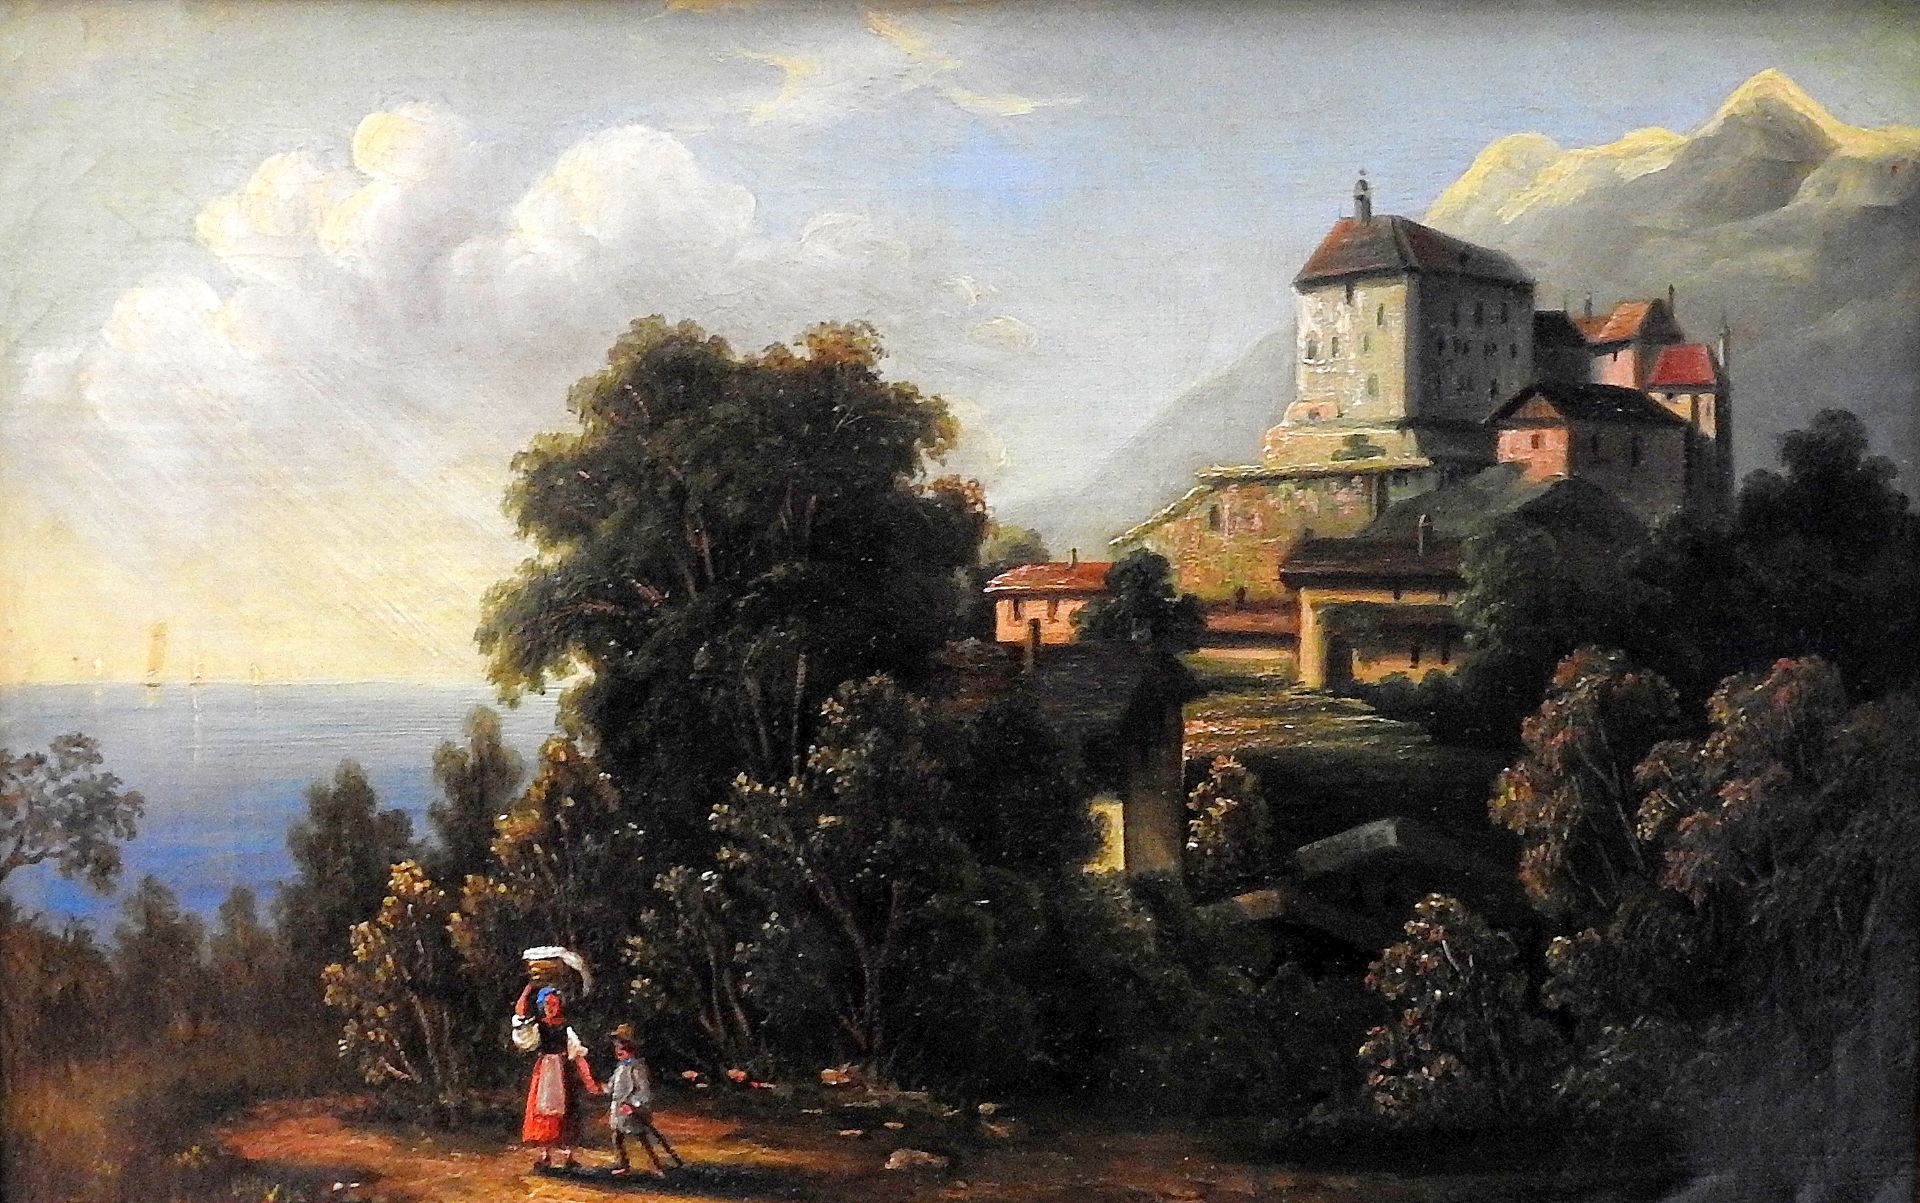 Öl/Leinwand. Das Gemälde zeigt ein Dorf an den Hängen eines Berges, im Hintergrund ein Gebirge wie